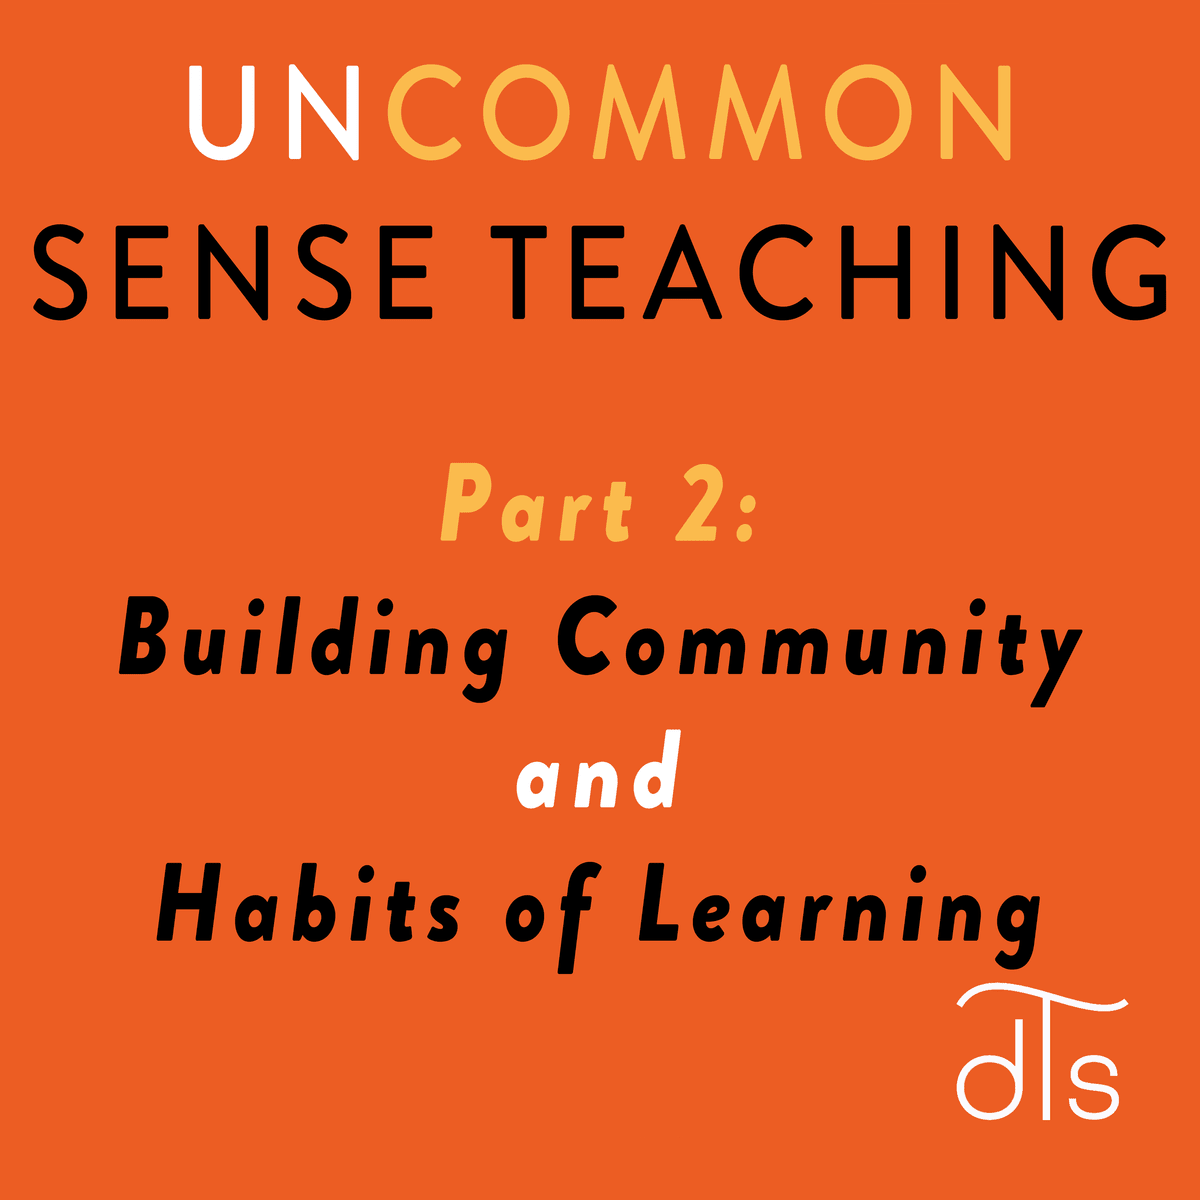 آموزش حس غیرمعمول: قسمت 2، ایجاد جامعه و عادات یادگیری